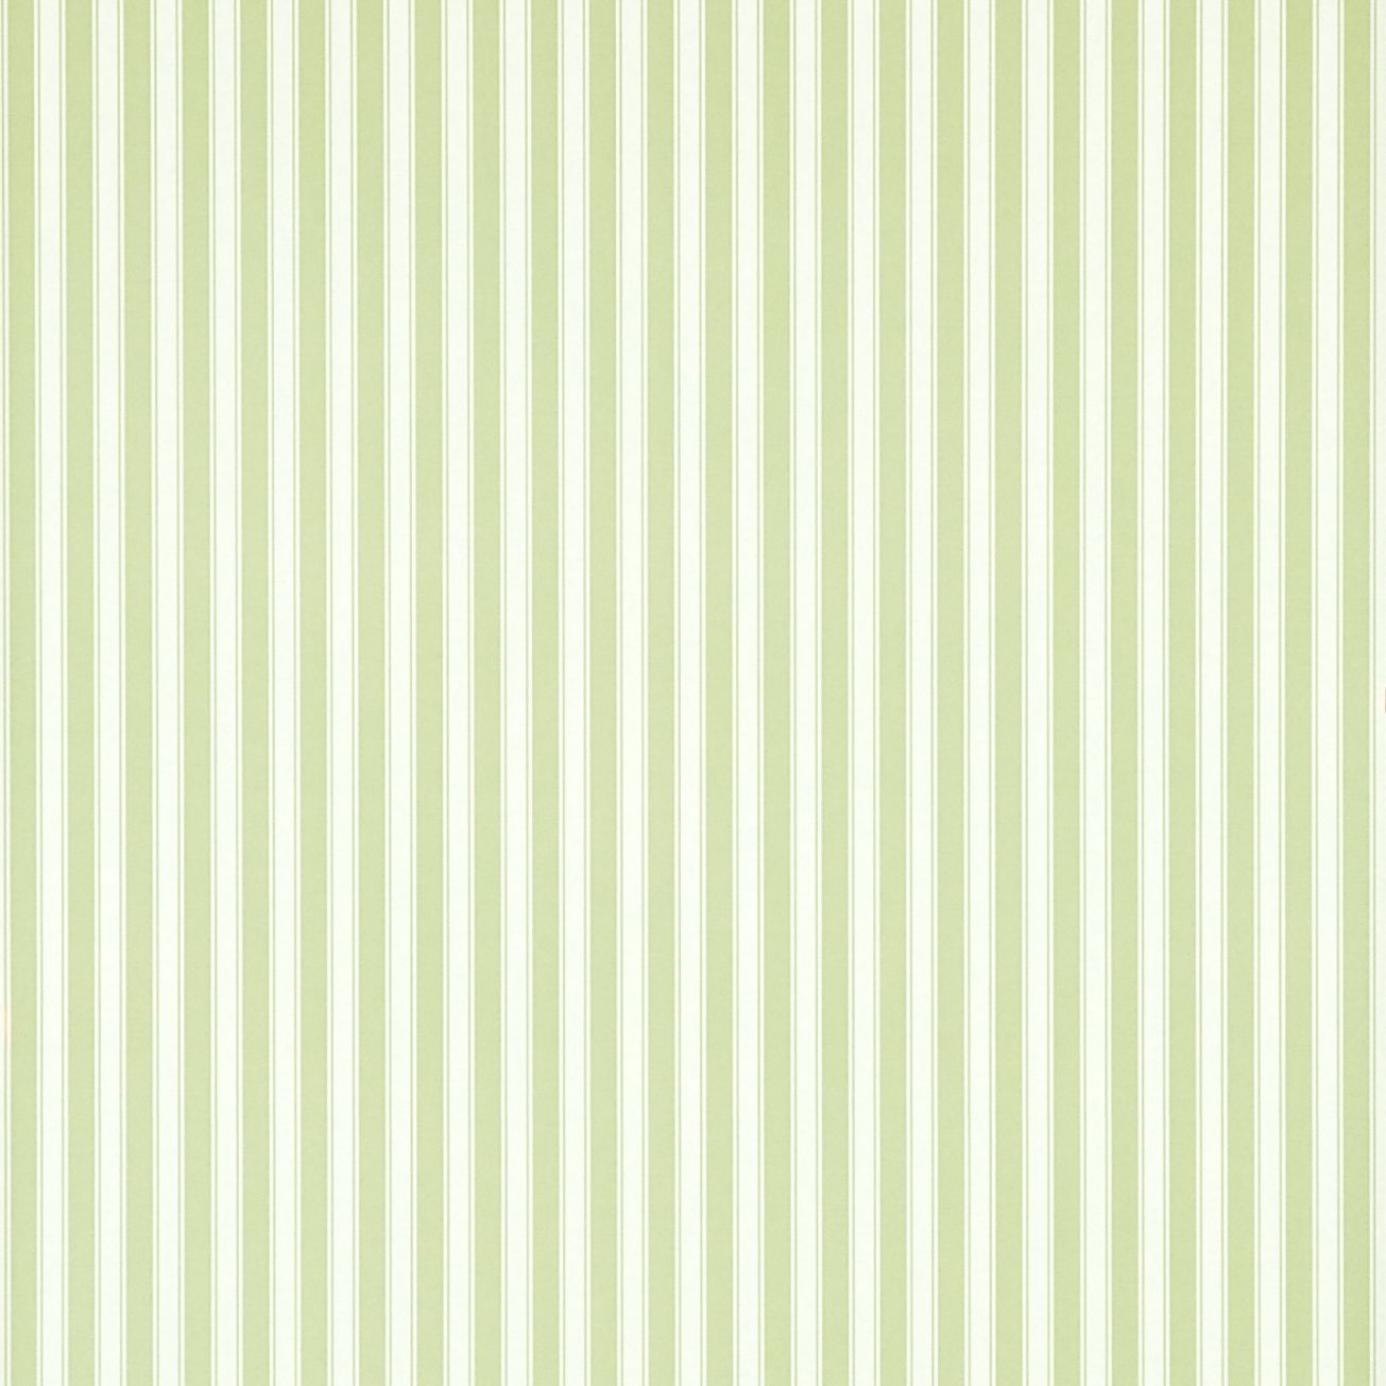 Green Striped Wallpaper Grasscloth